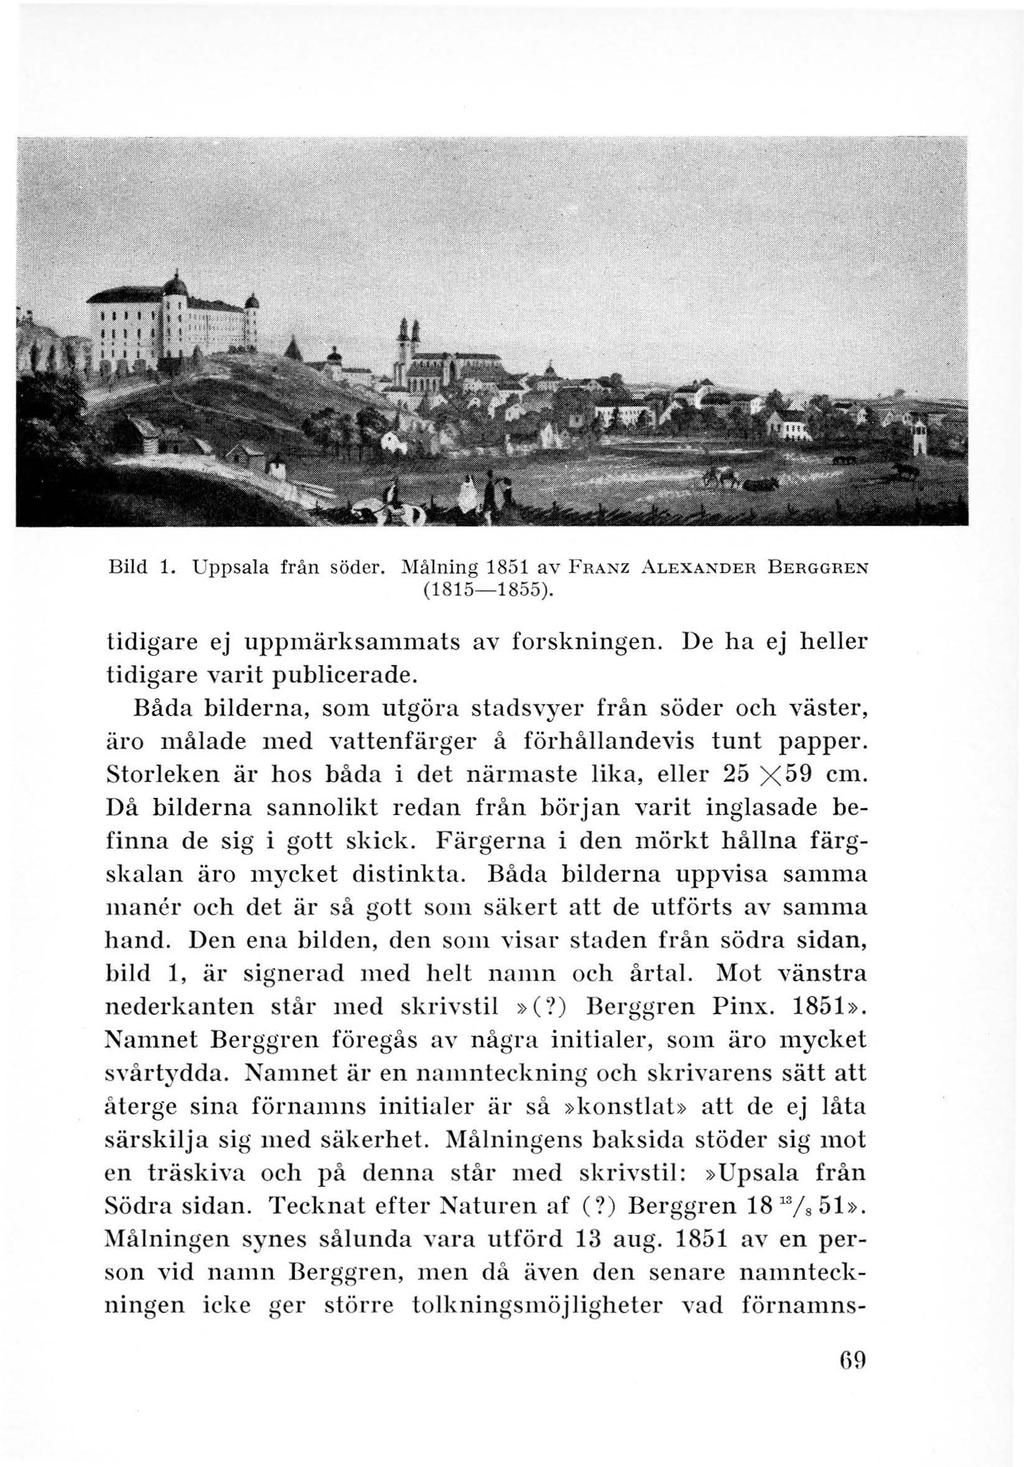 Bild 1. Uppsala från söder. Målning 1851 av FRANZ ALEXANDER BERGGREN (1815-1855). tidigare ej uppmärksammats av forskningen. De ha ej heller tidigare varit publicerade.